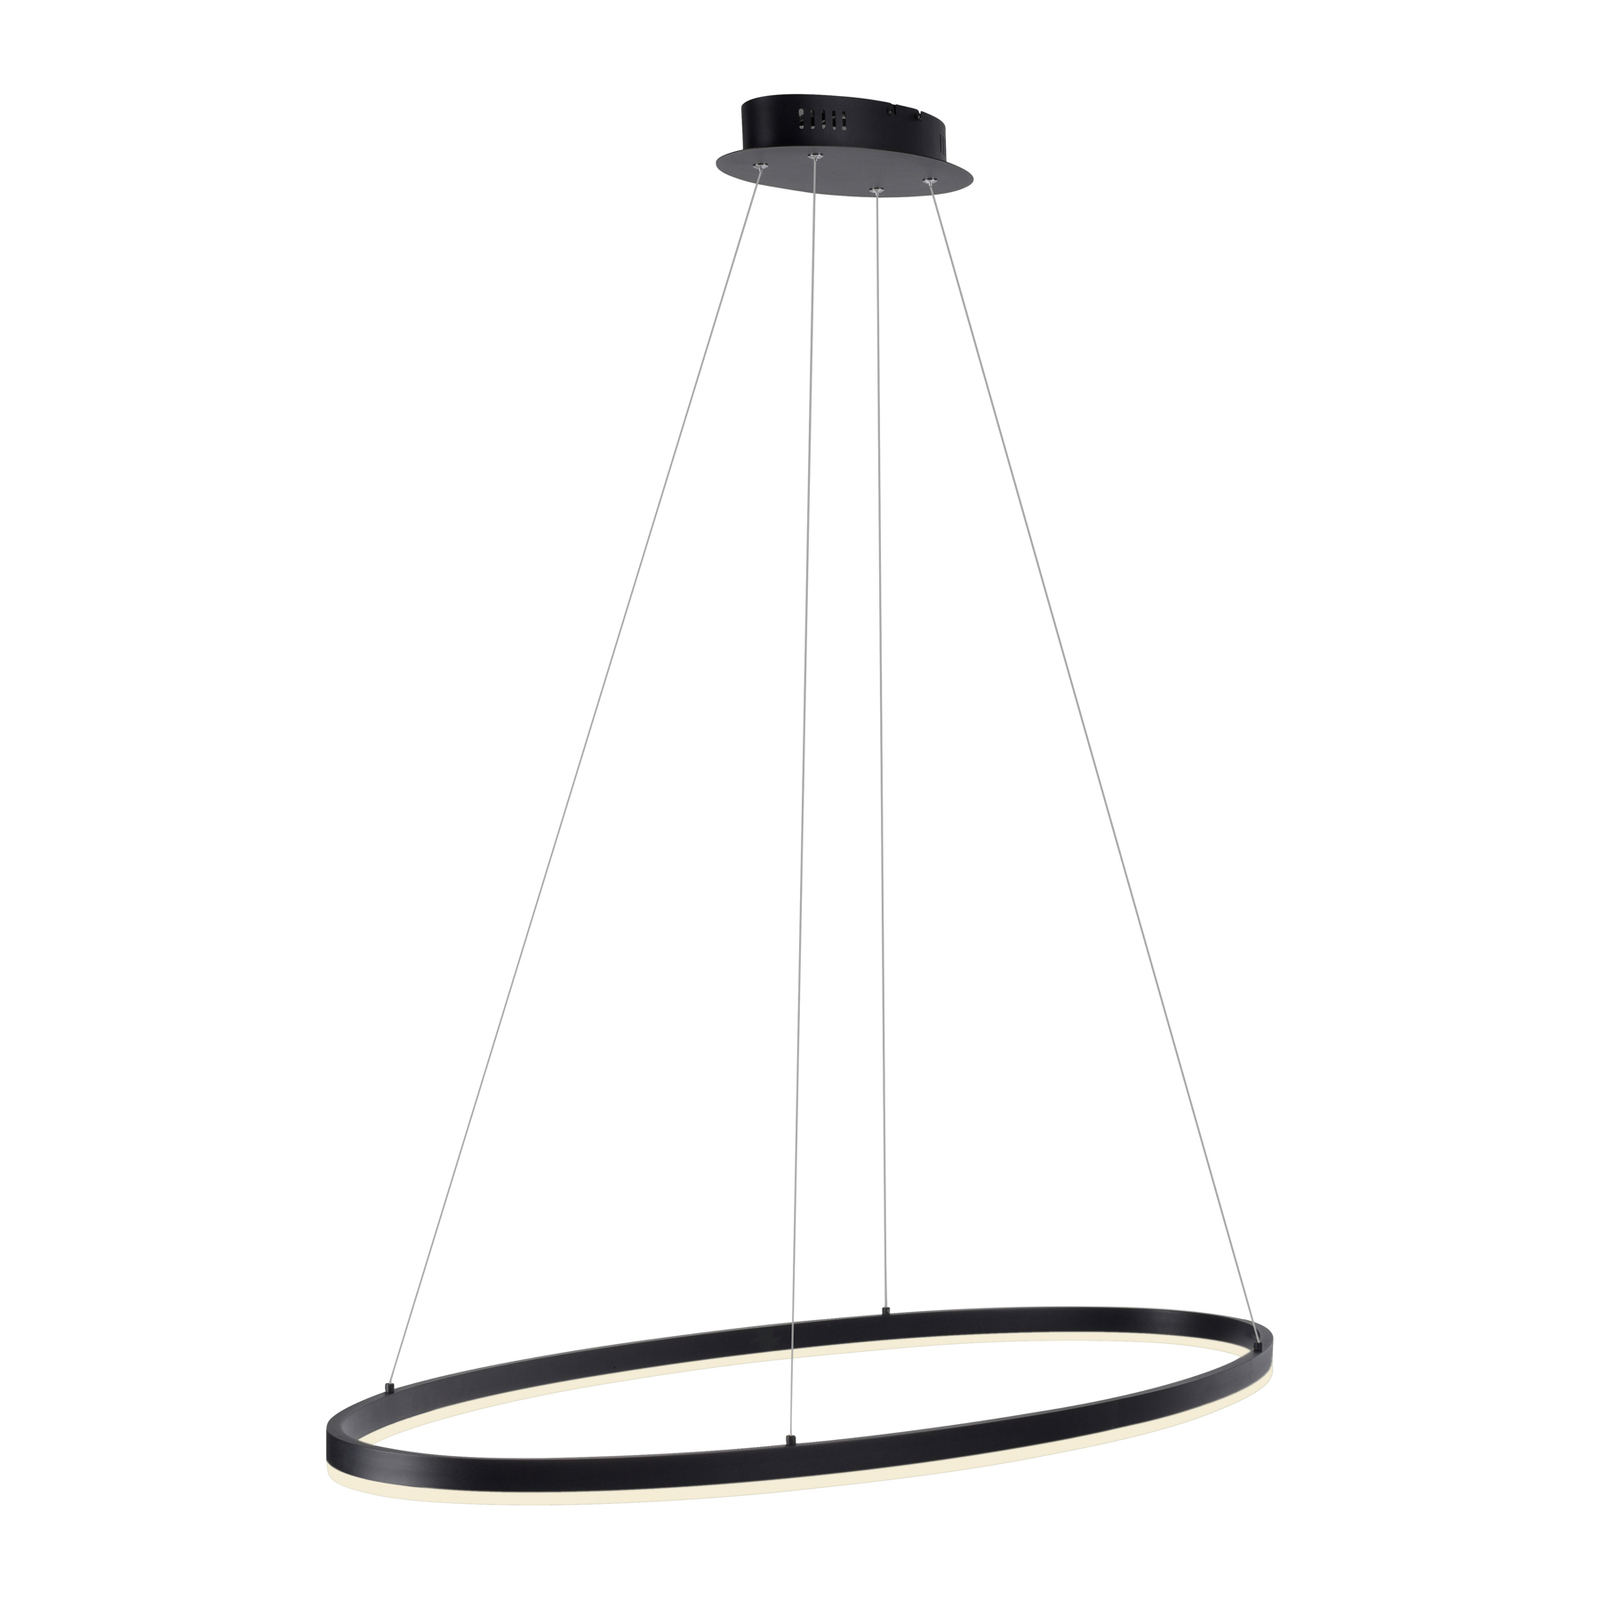 Paul Neuhaus Titus LED sospensione, ovale 118x56cm